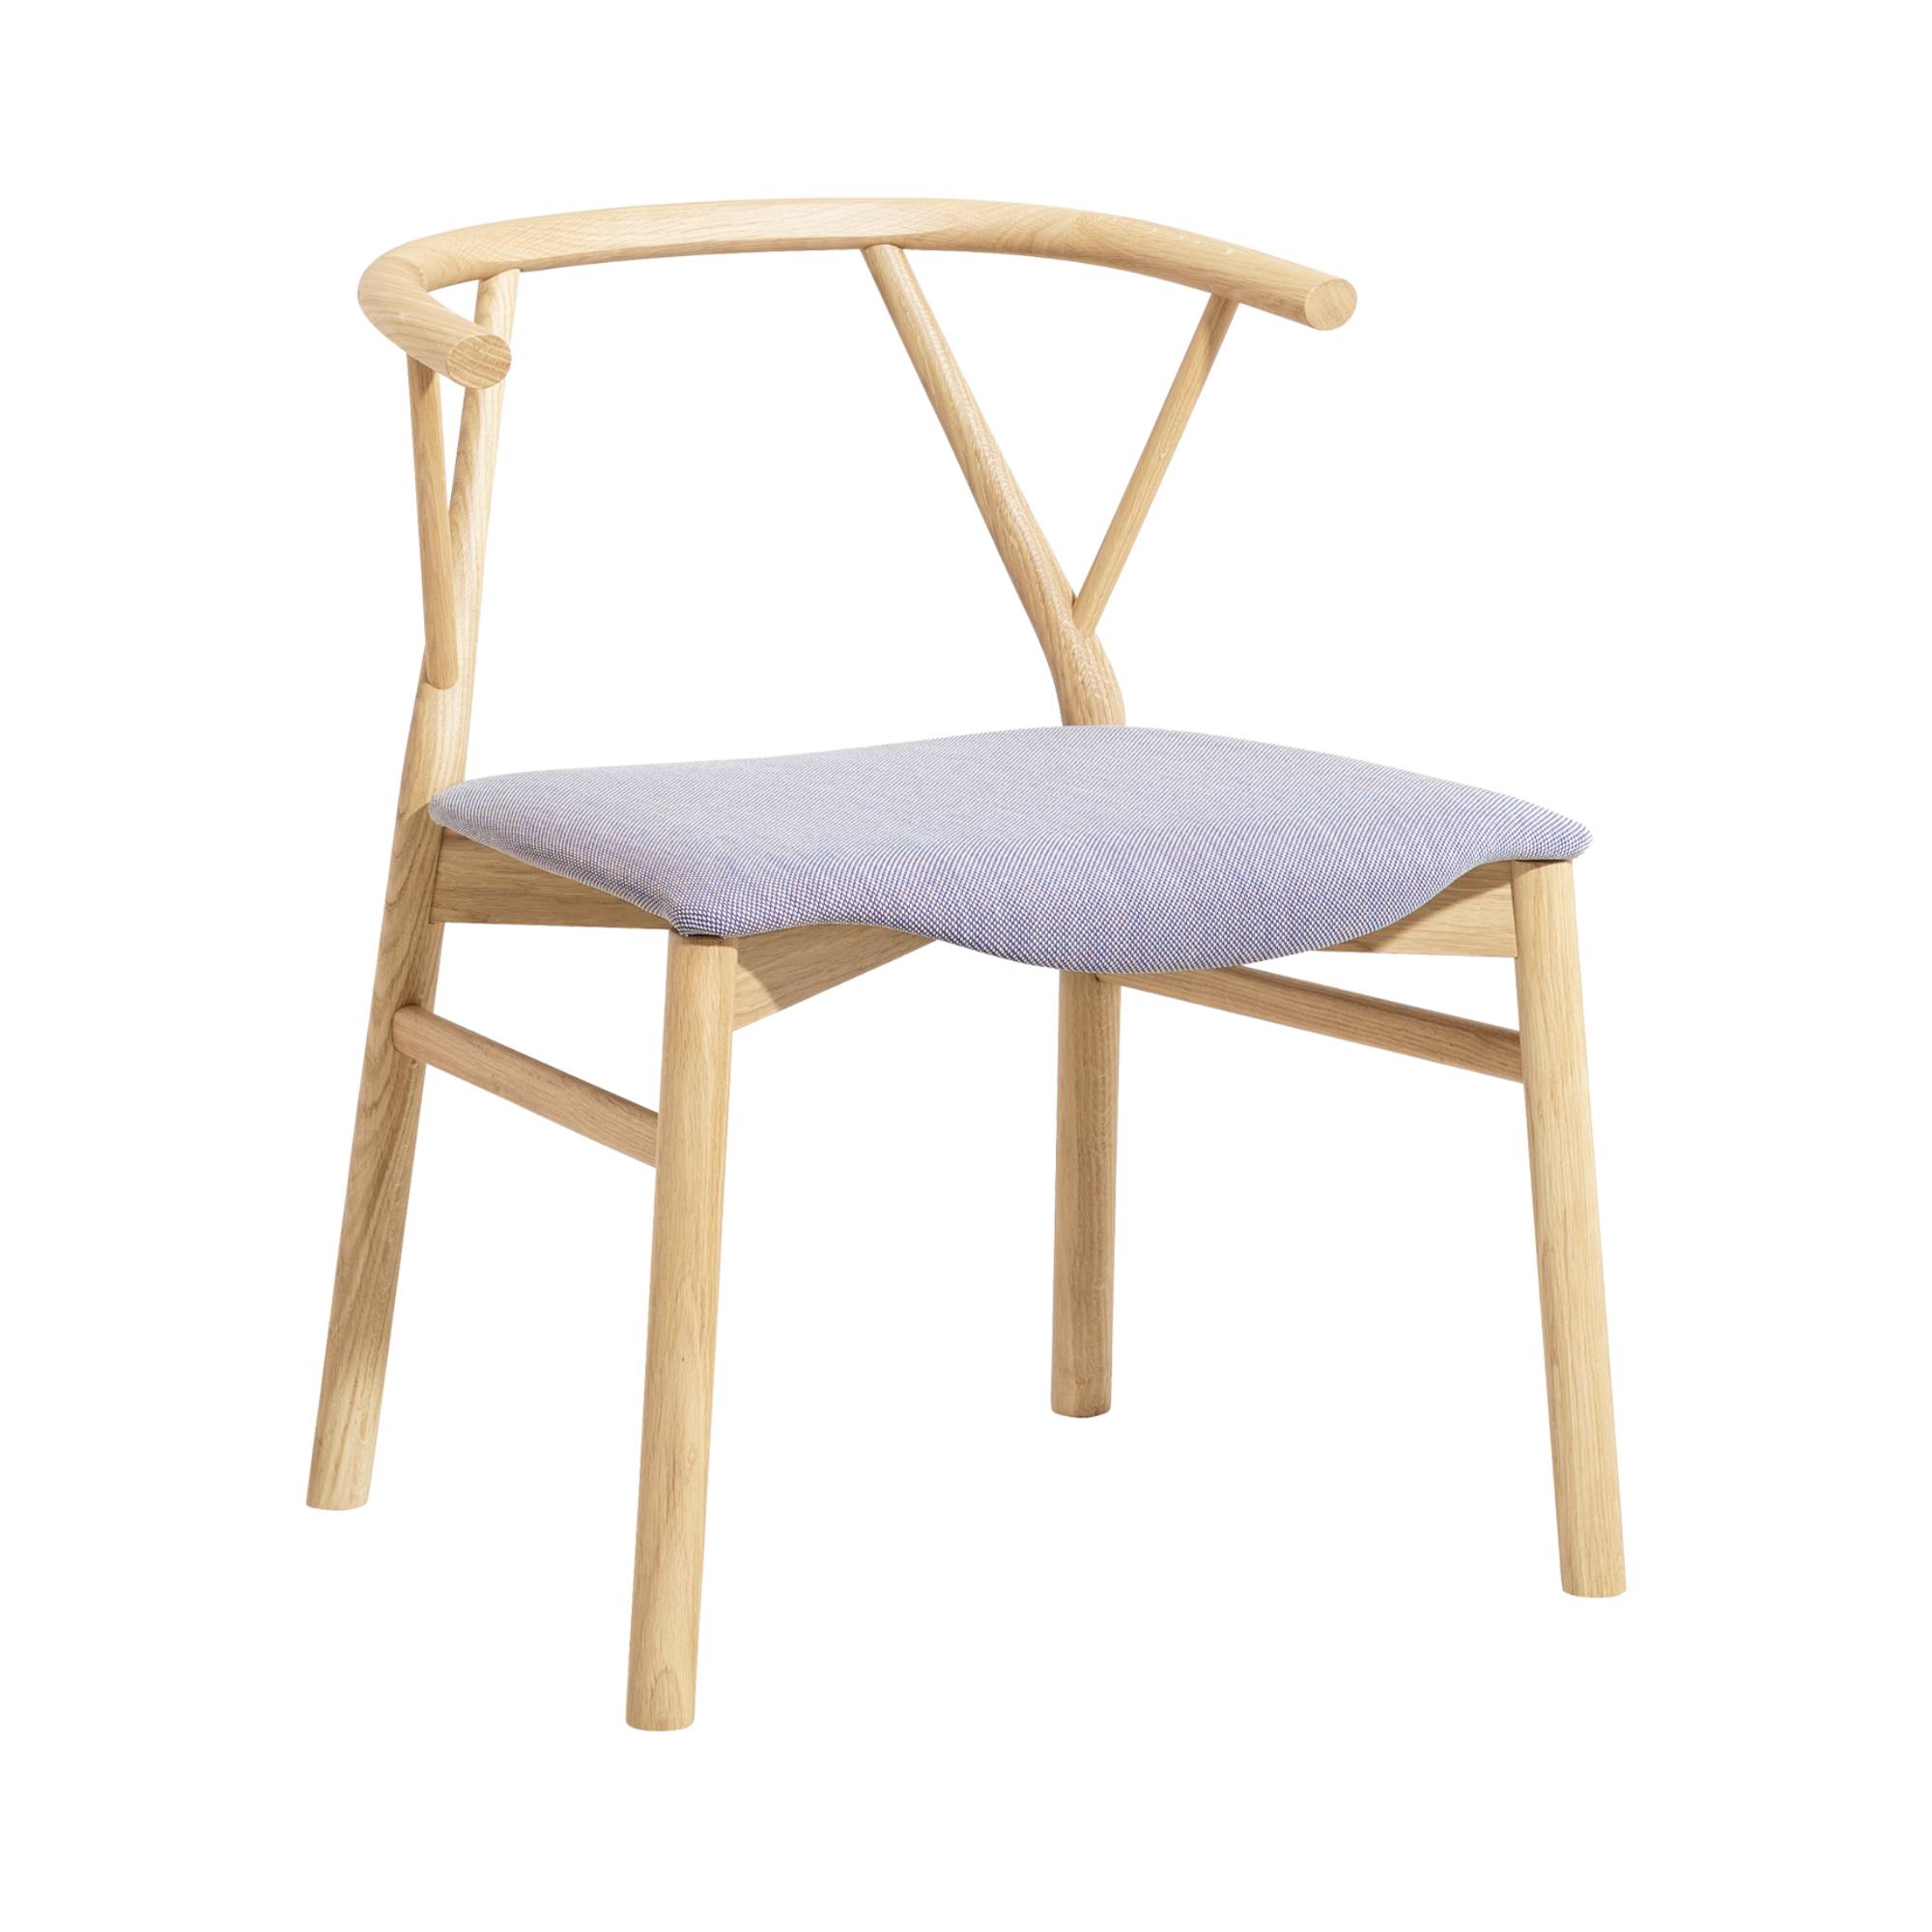 Valerie Chair: Upholstered + Flamed Oak